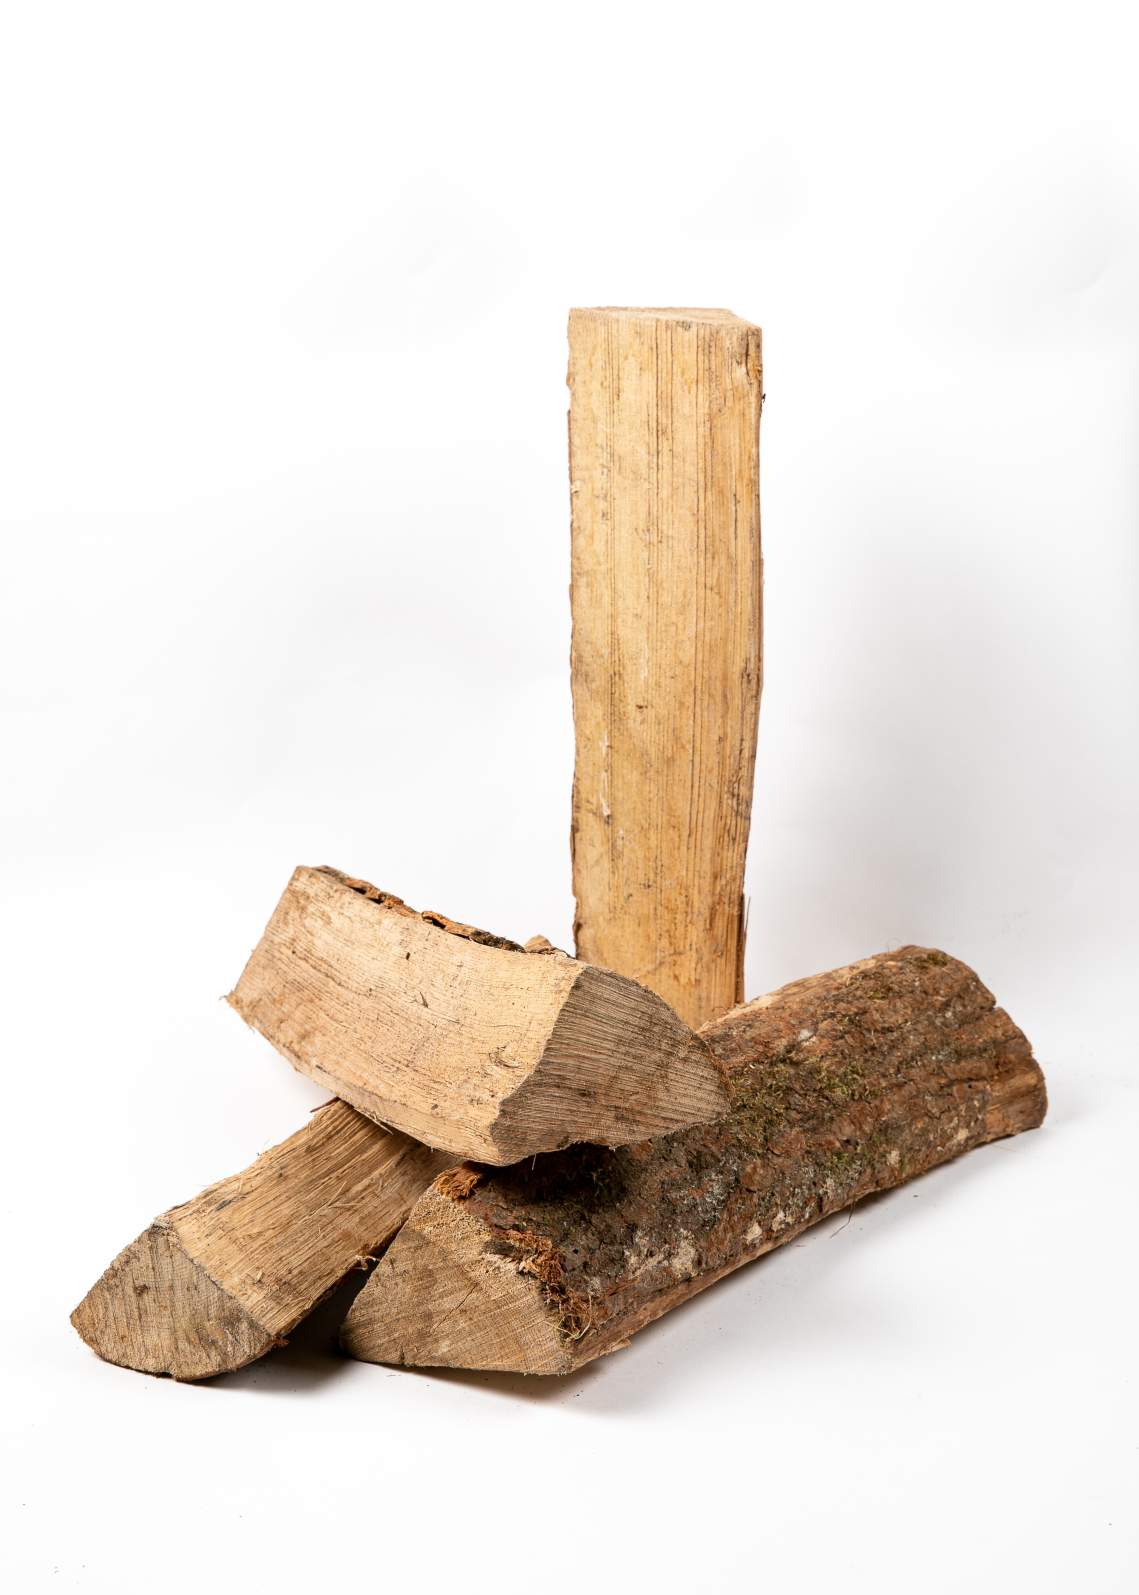 Bois de chauffage en vrac – Bûche de 50 cm ( 1 stère ) – Stère bois